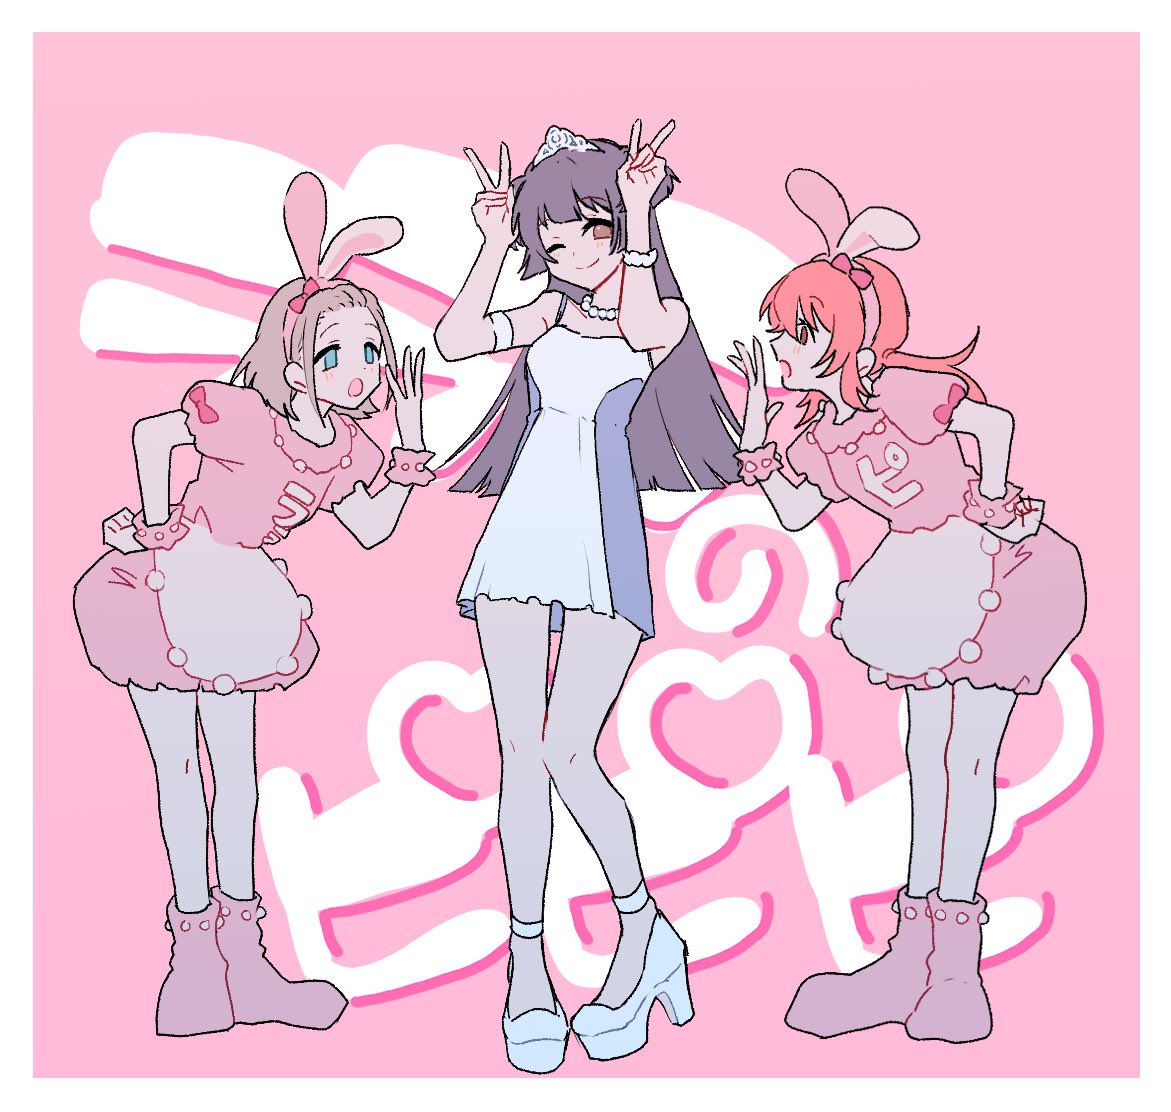 multiple girls 3girls v animal ears rabbit ears dress high heels  illustration images